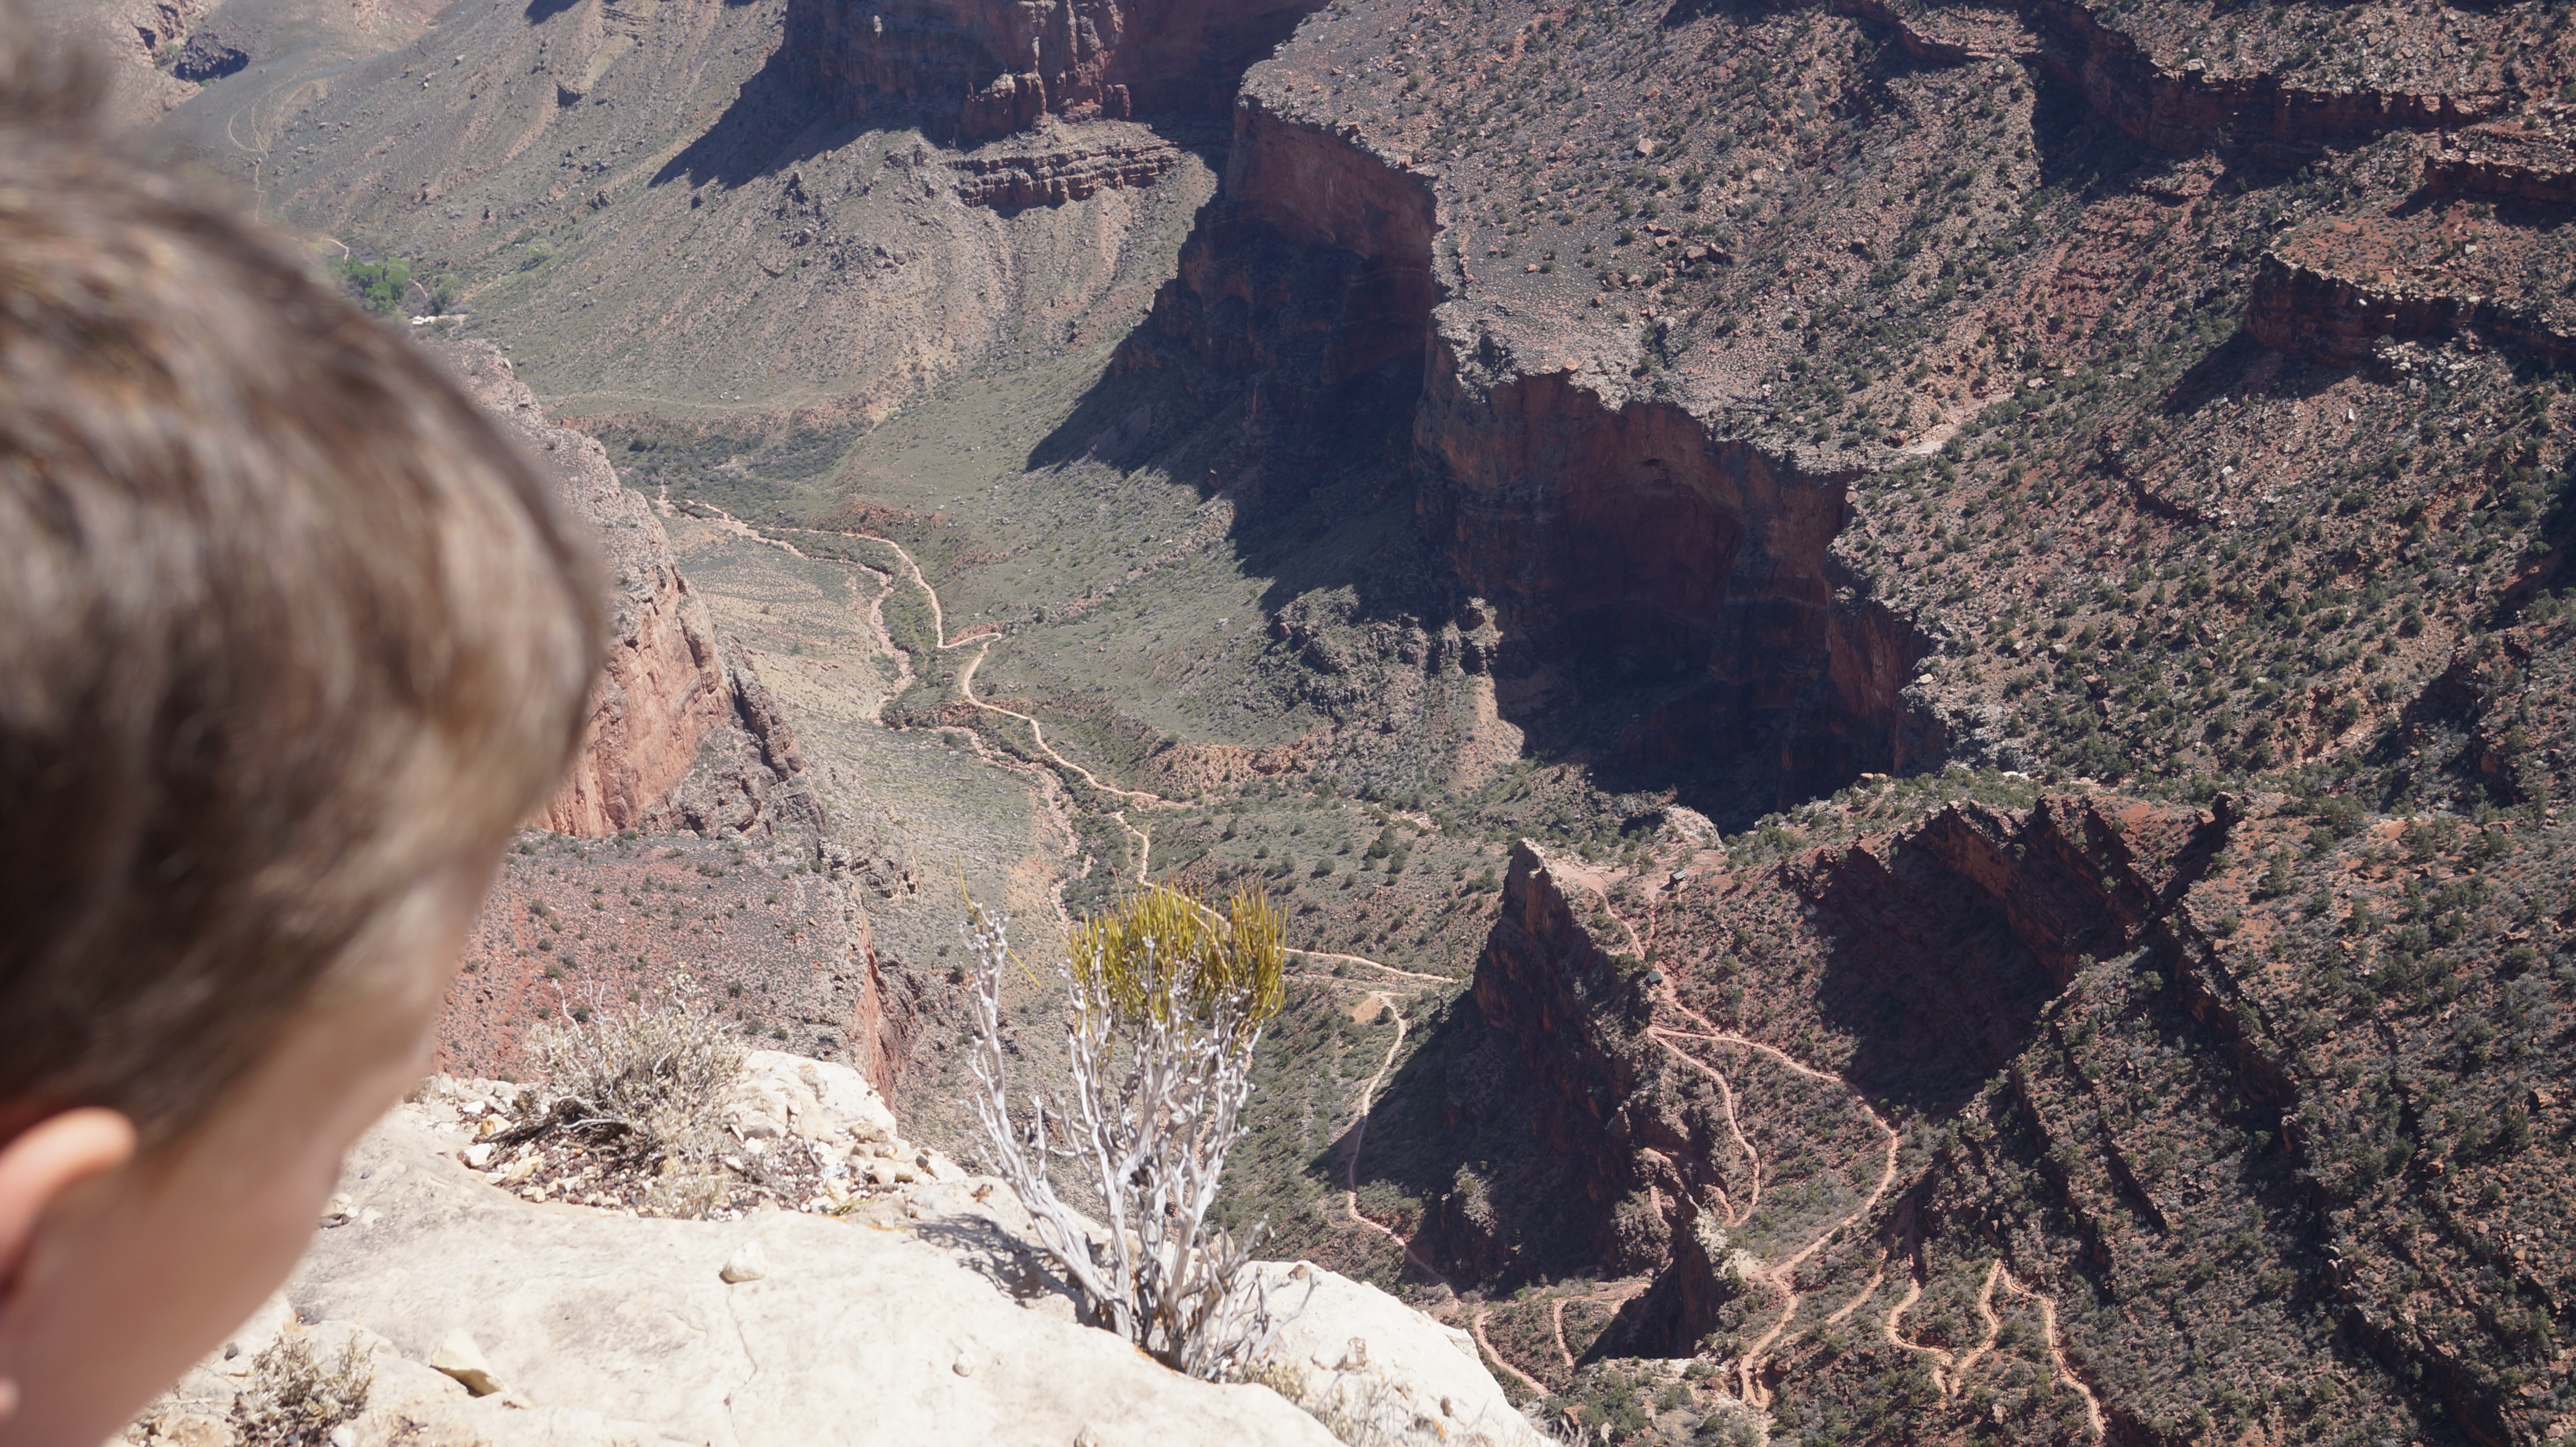 A long way down - at Grand Canyon....